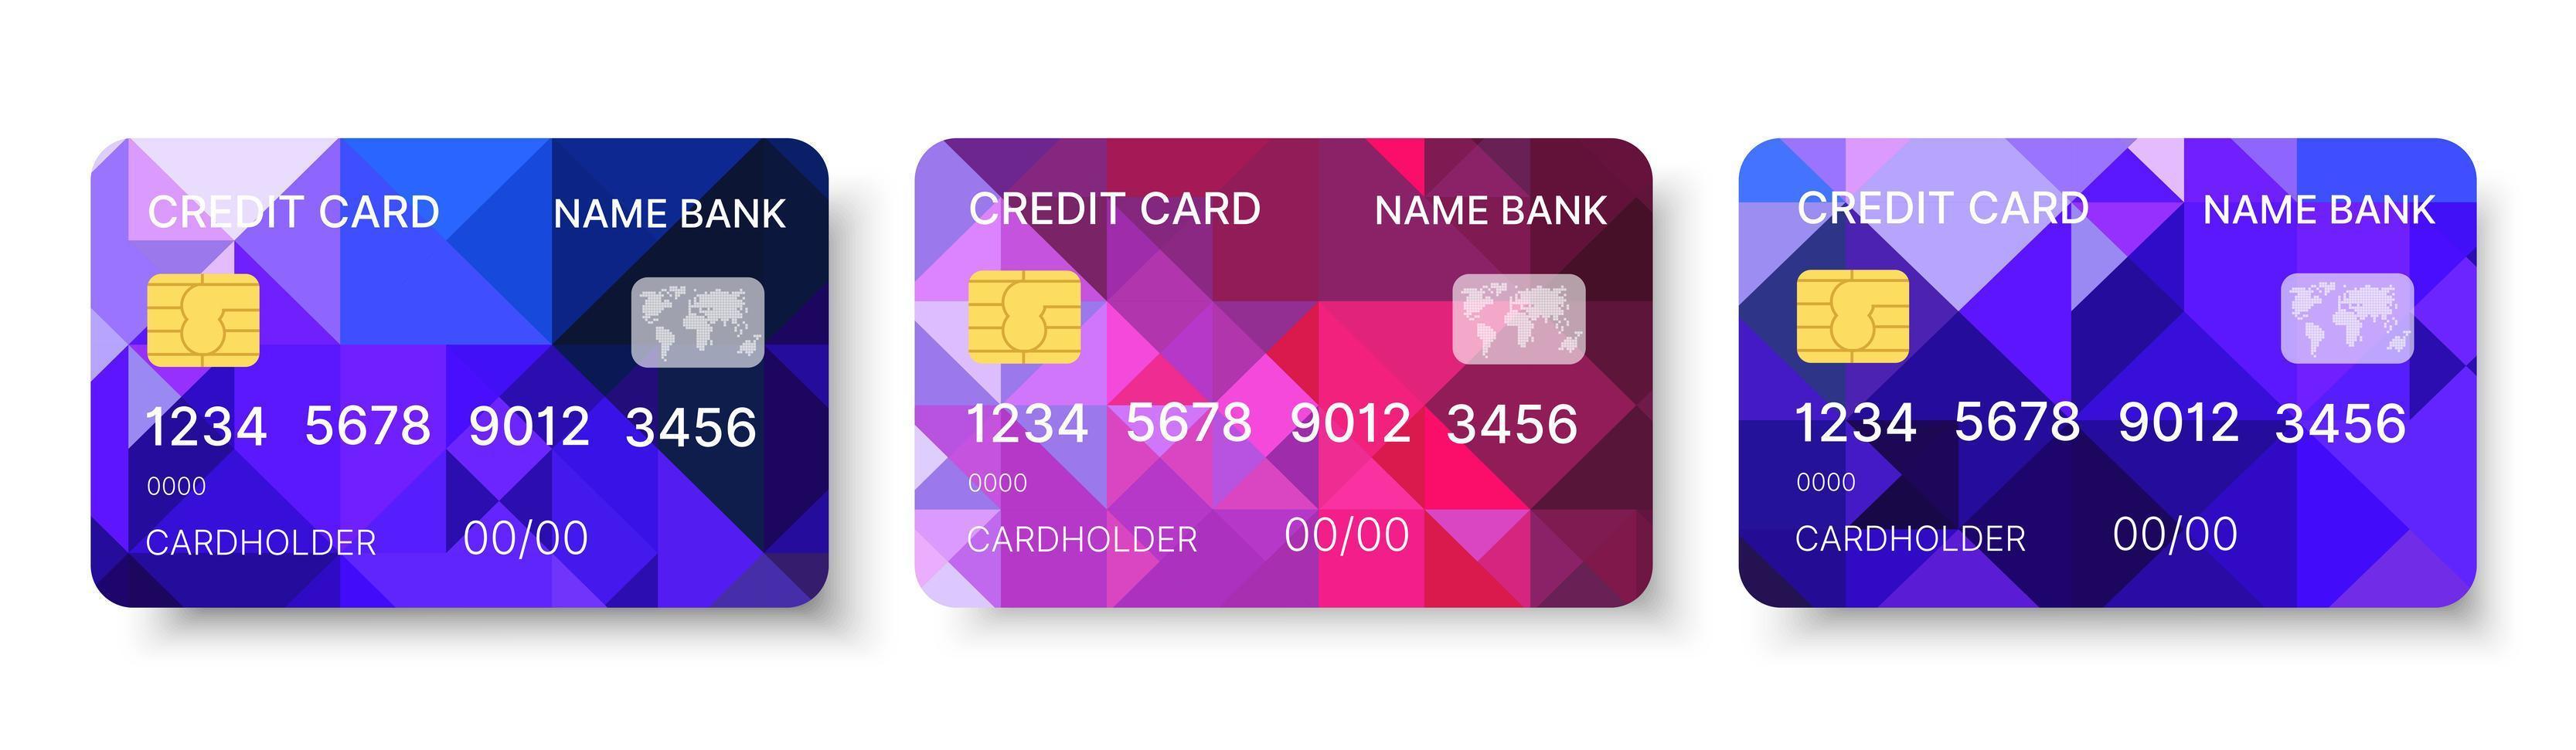 jeu de cartes de crédit vecteur modèle multicolore avec dessin géométrique triangle abstrait